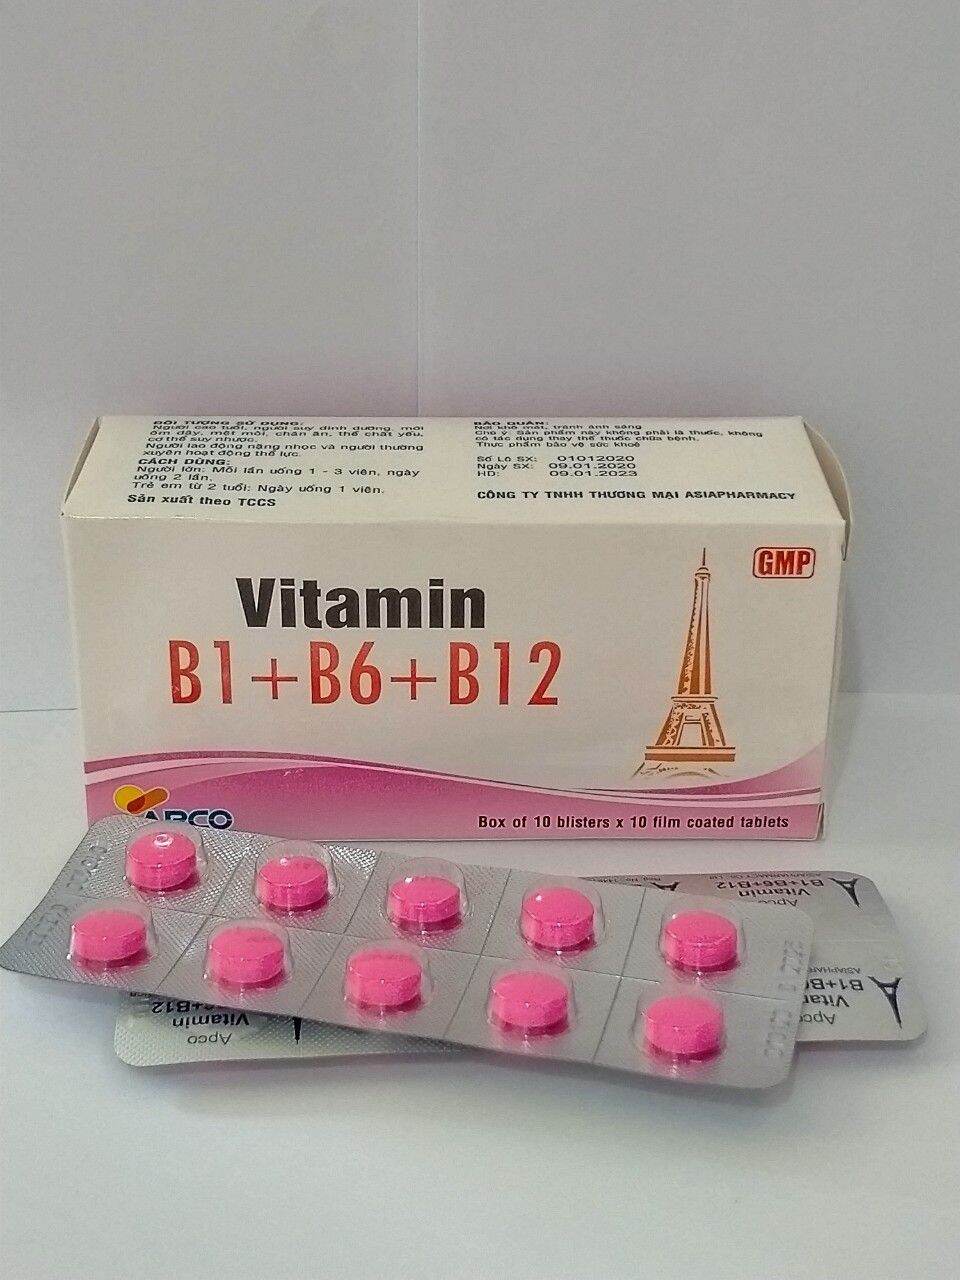 VITAMIN B1+B6+B12 APCO Hộp 100 viên giúp tăng cường sức khỏe